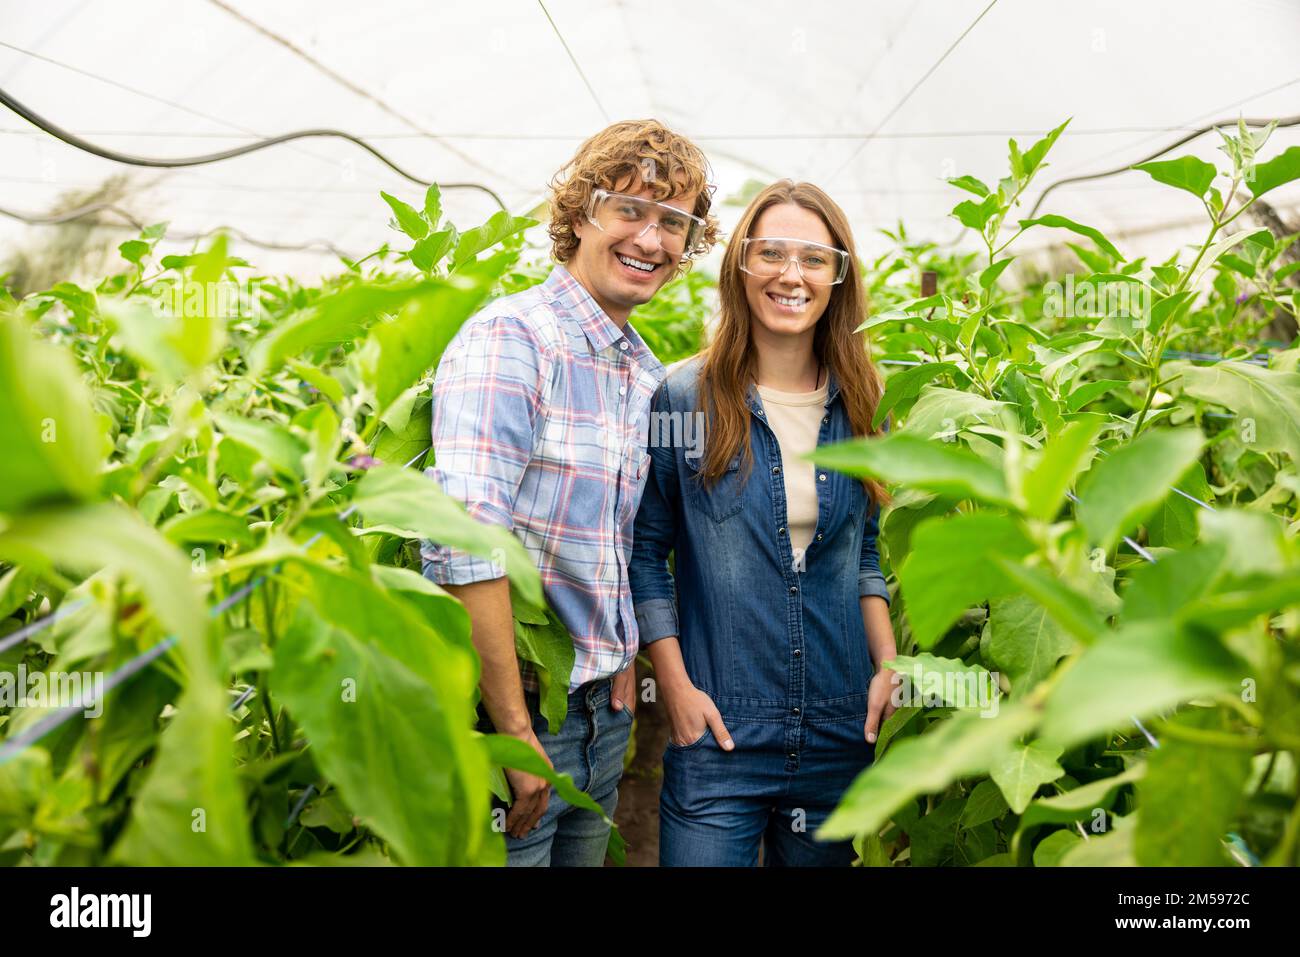 Zwei freudige Landwirtschaftler in Schutzbrille, die im Treibhaus stehen Stockfoto